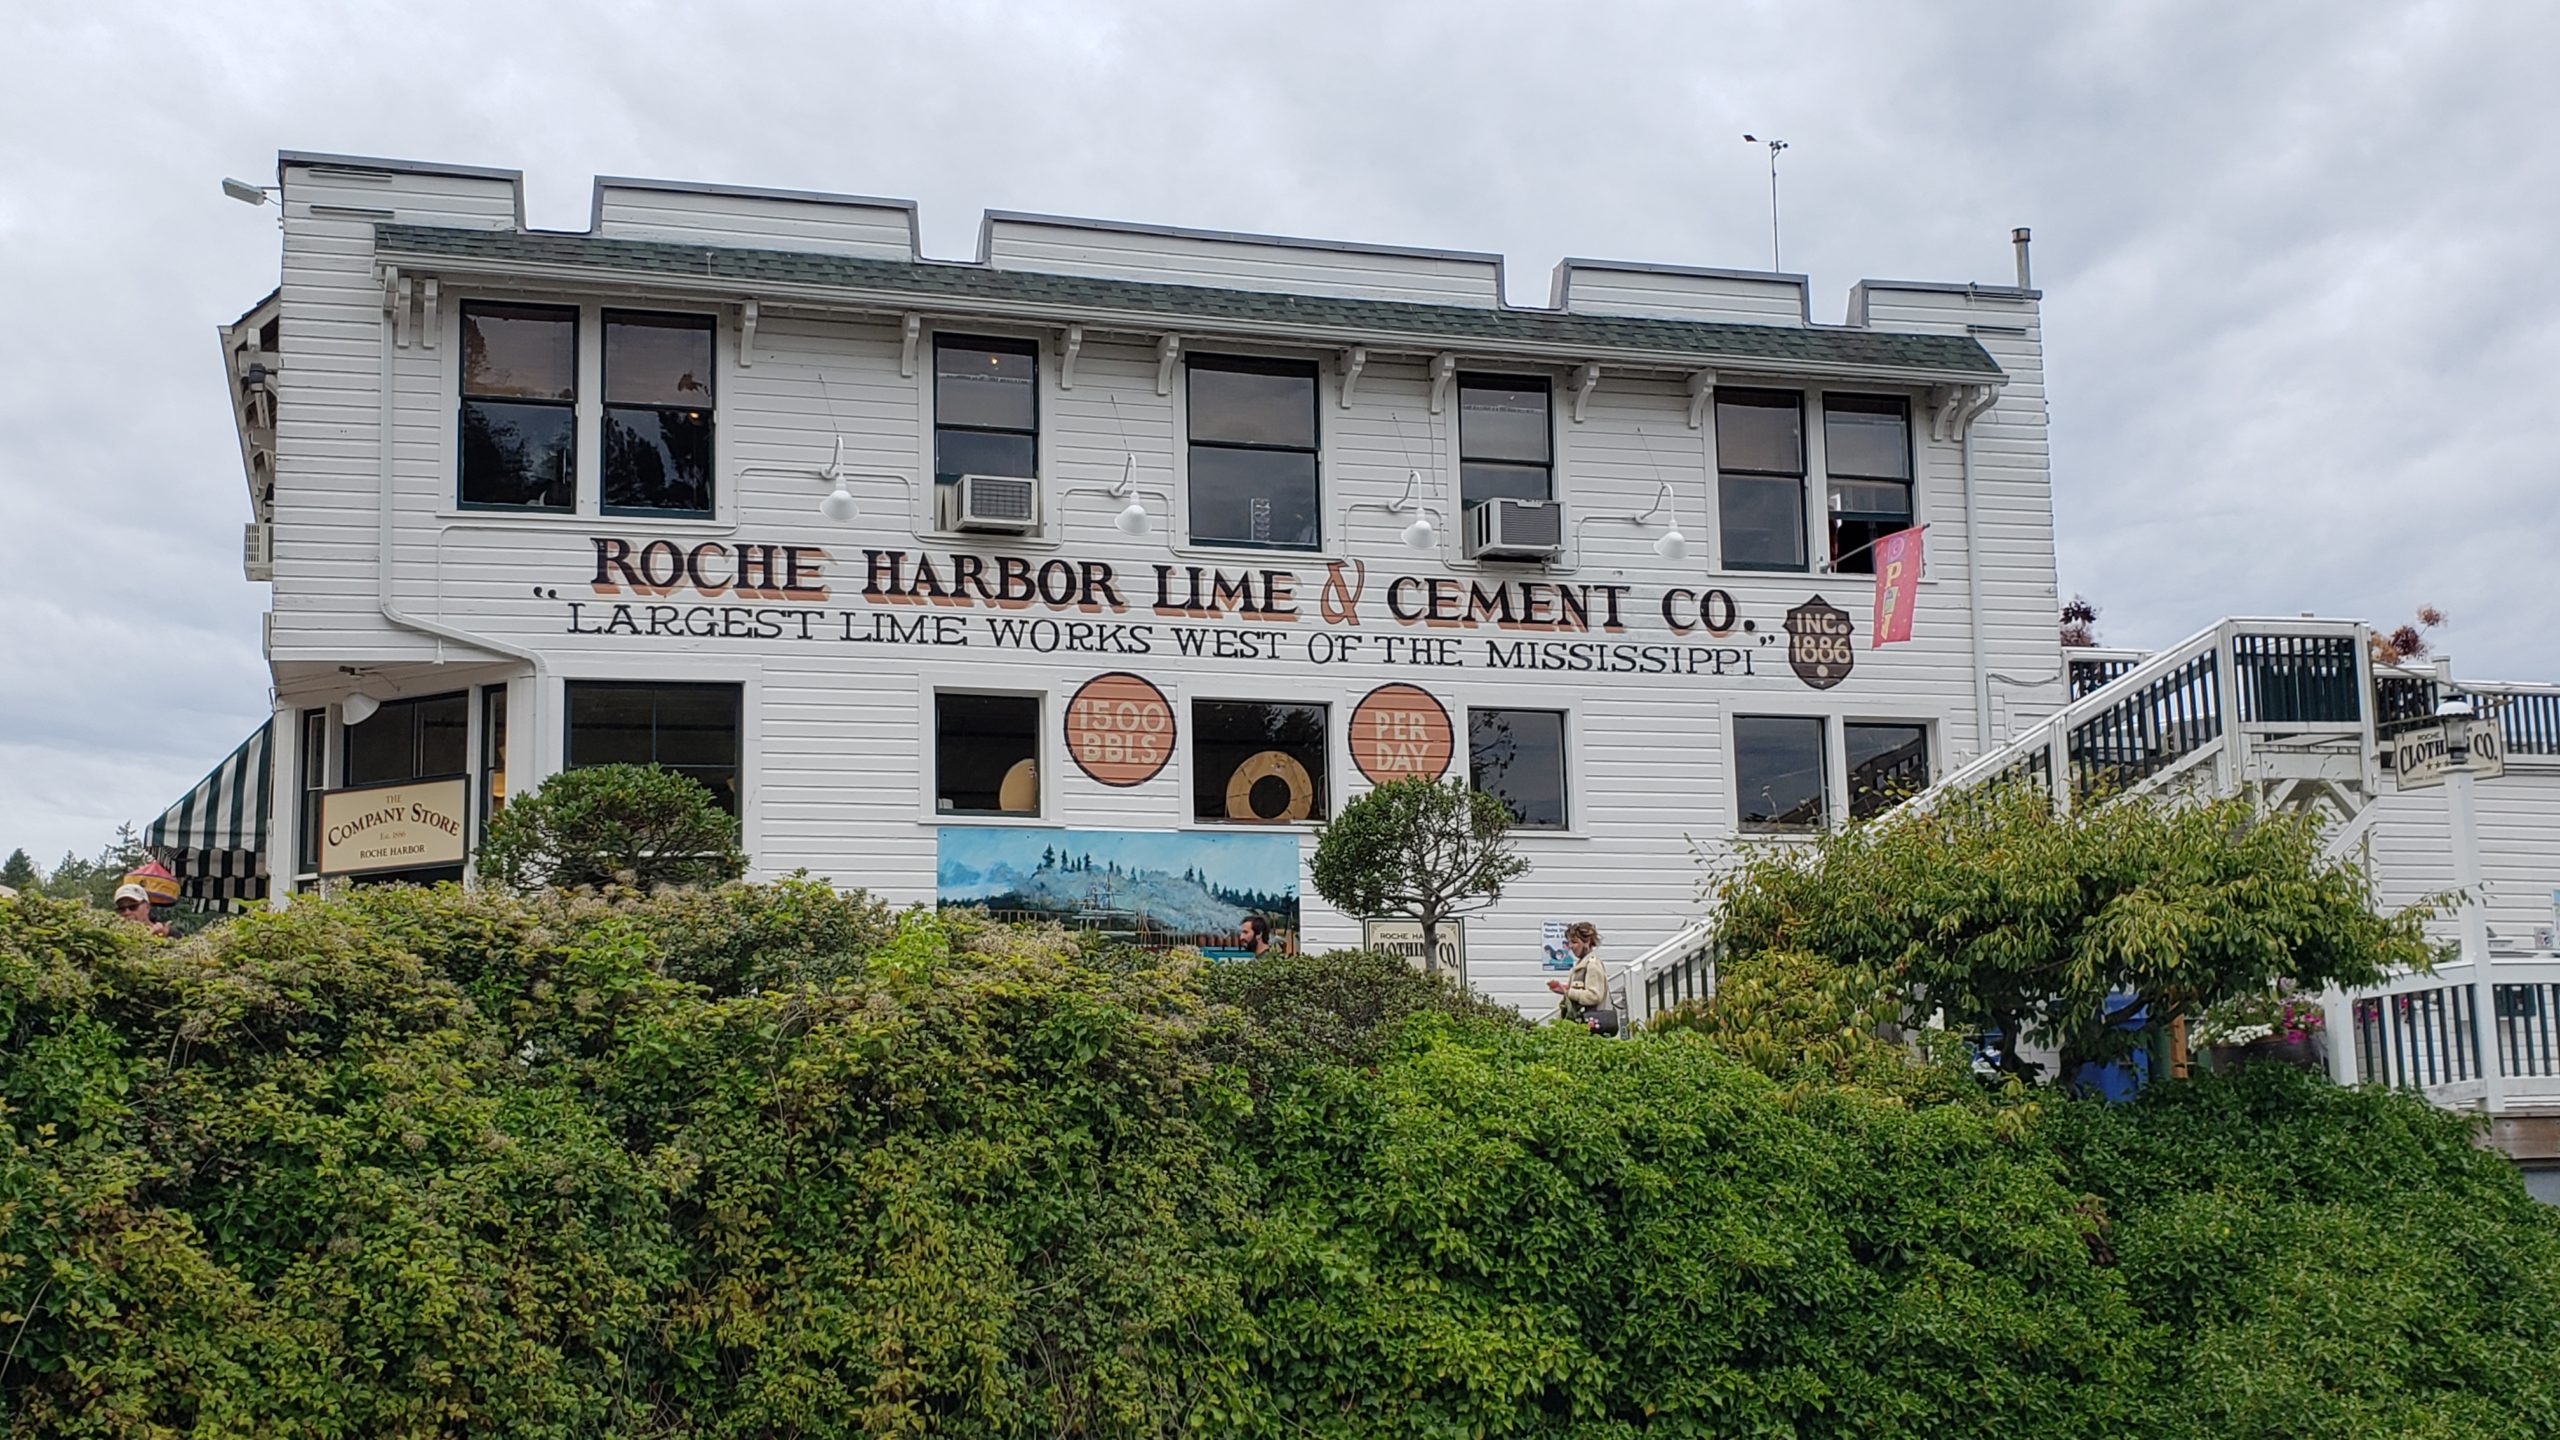 Roche Harbor in the Off Season